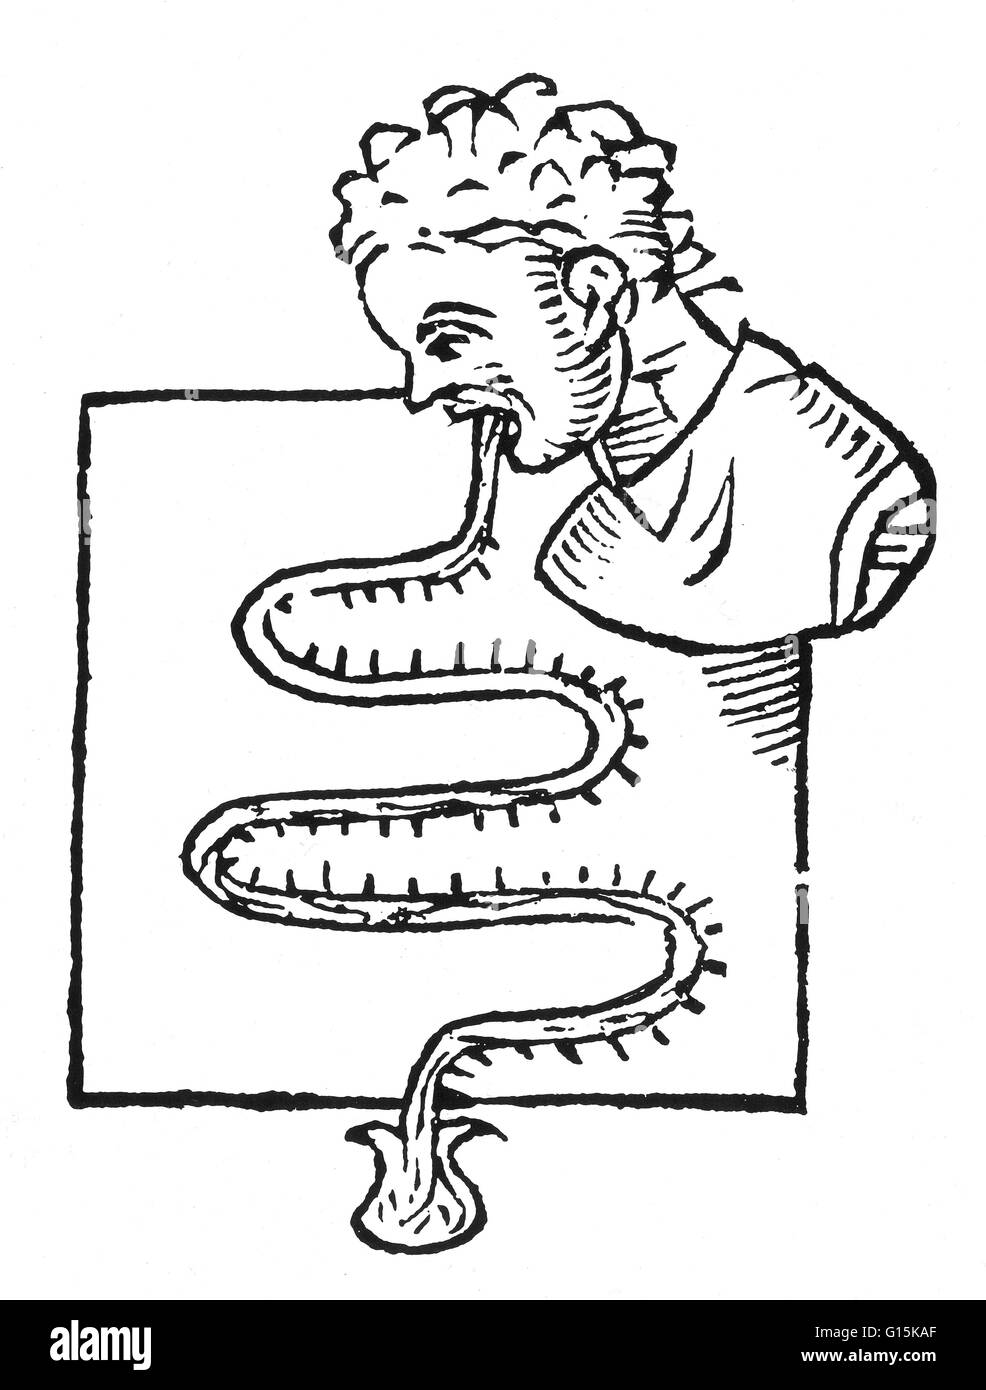 Più presto noto illustrazione di un termometro orale, tratte dal suo inventore, il medico italiano Sanctorius Sanctorius (1561-1636), nel 1625. Il termometro è stato realizzato in tubi di vetro ed il flaconcino a basso contenuto di mercurio. Per ottenere una lettura, la PAT Foto Stock